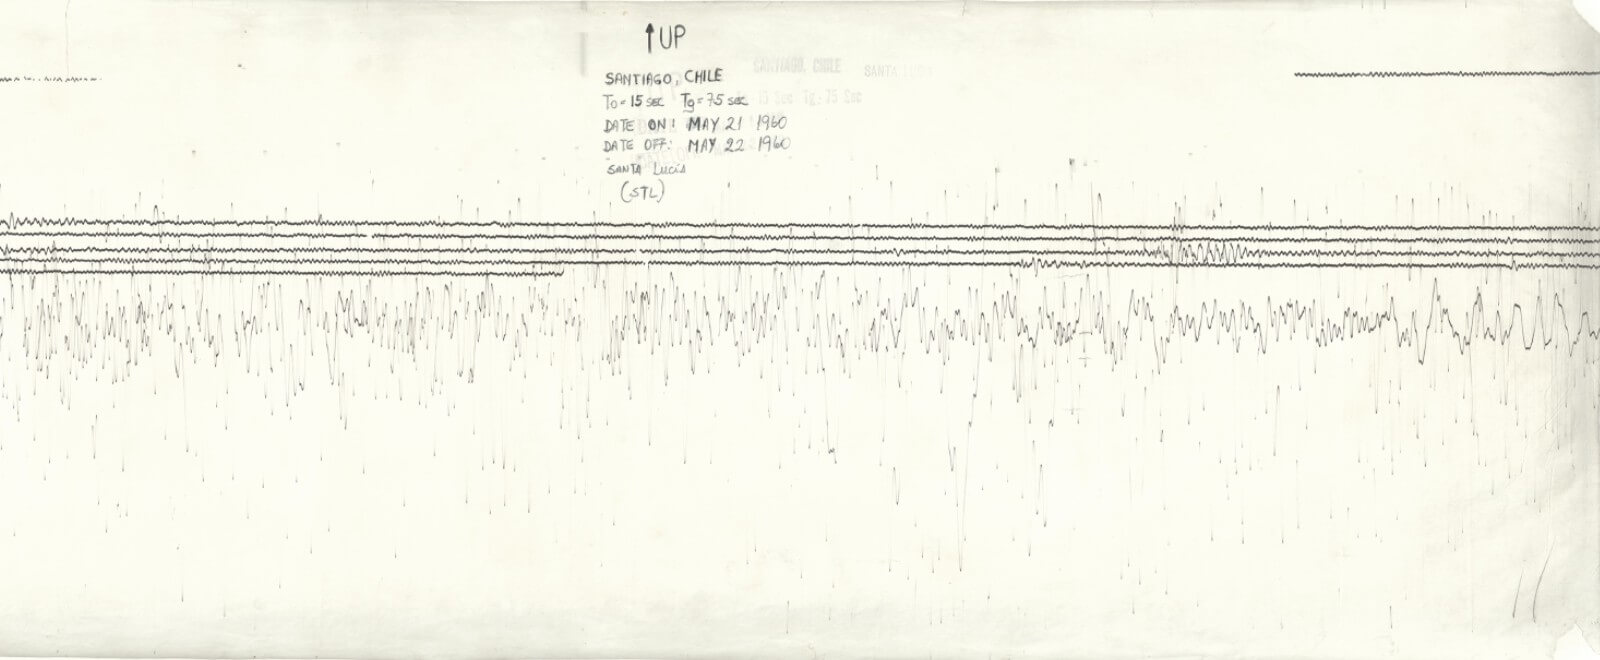 Sismogramas del megaterremoto de 1960 son puestos a disposición del público